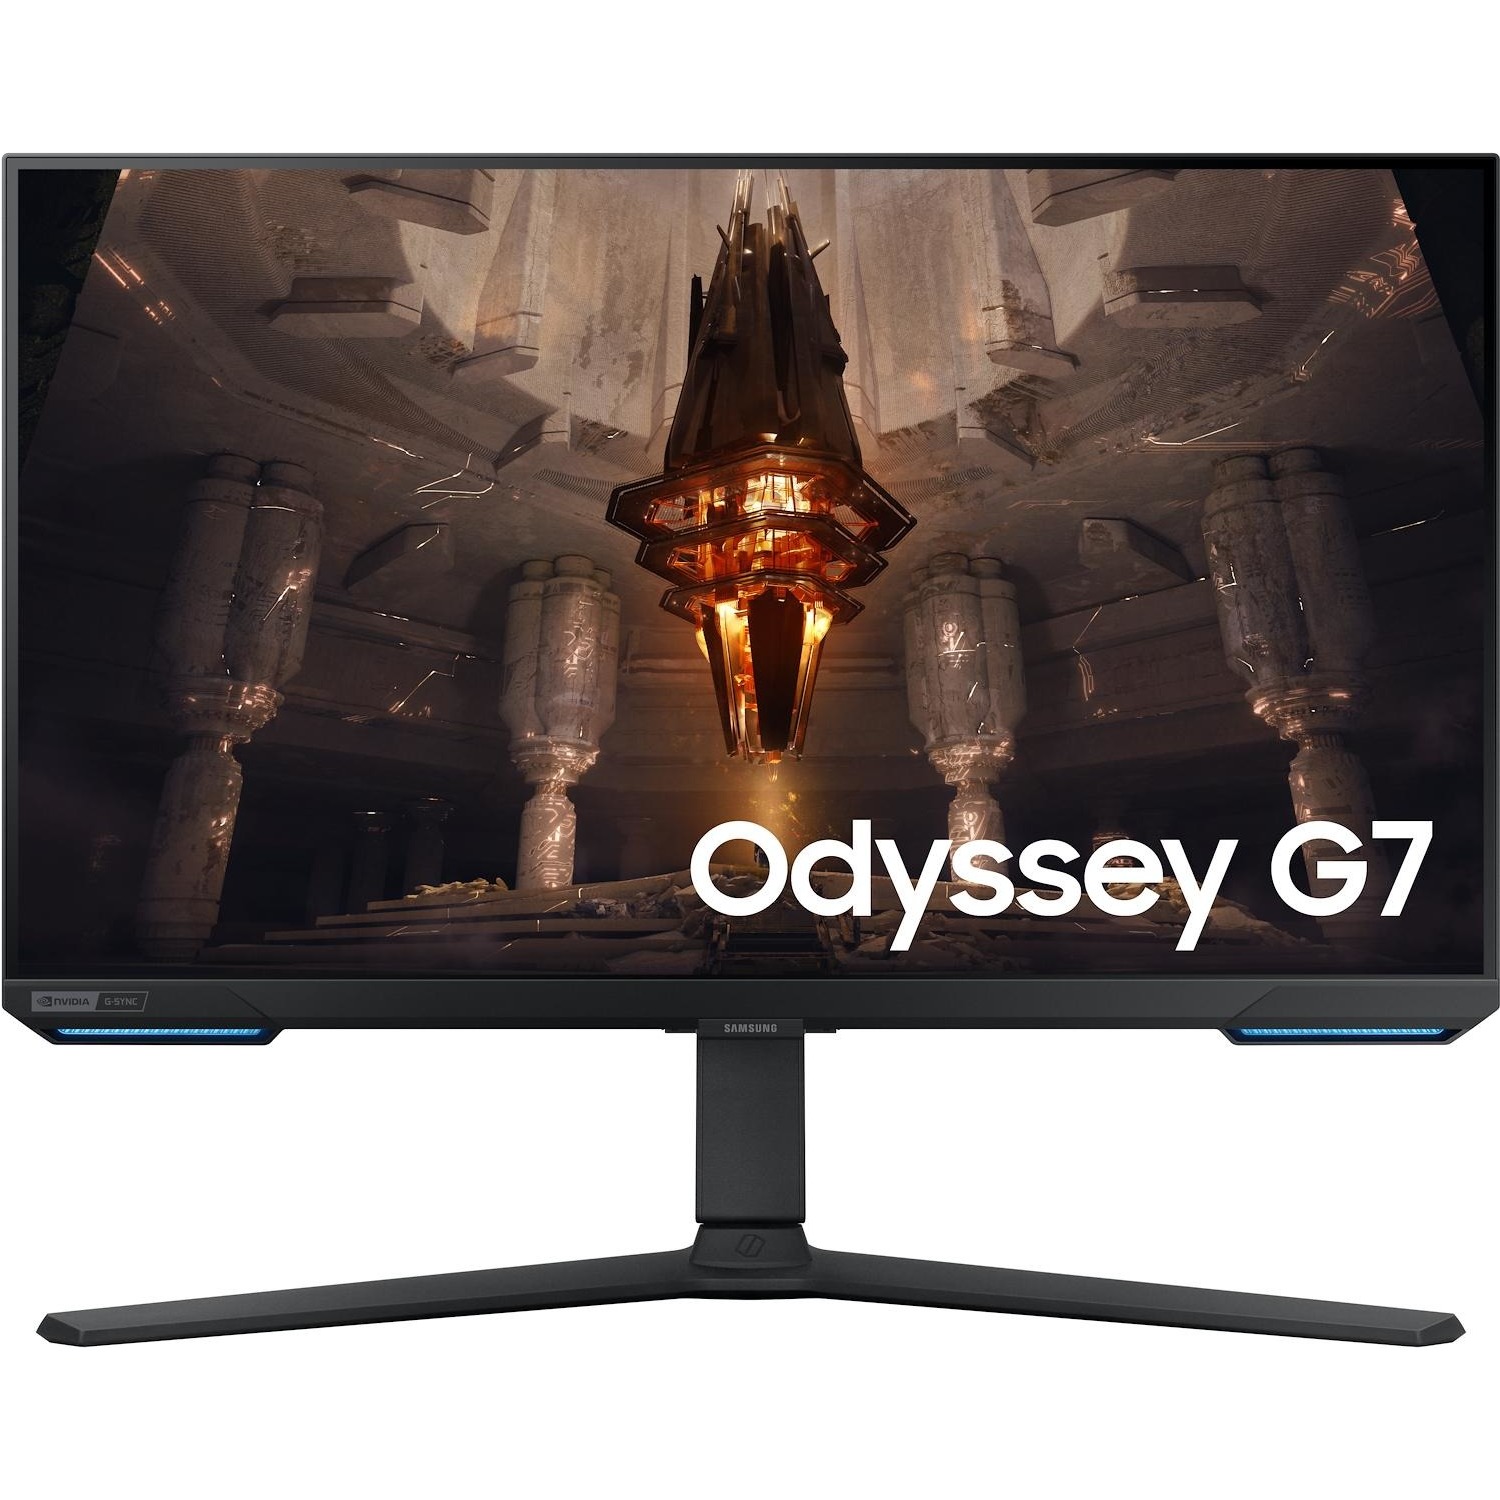 Immagine per Monitor gaming Samsung Odyssey G7 4K compatibile PS5 da DIMOStore